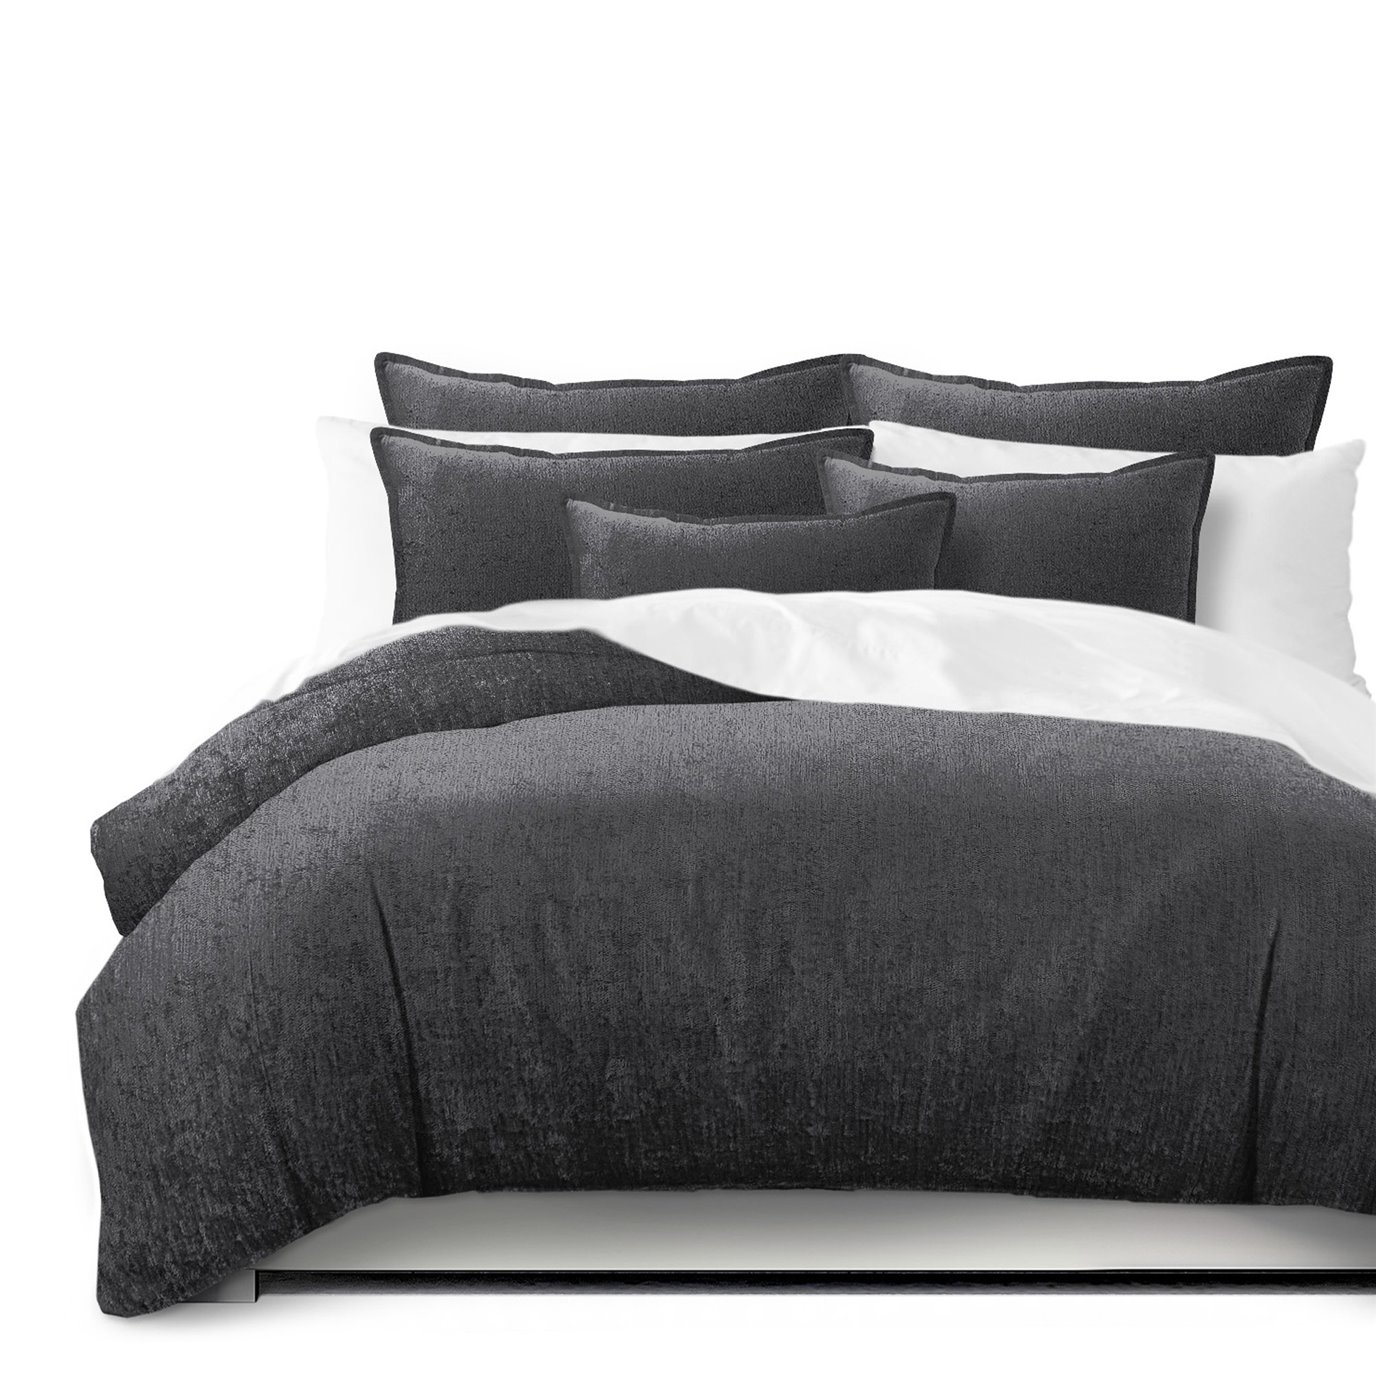 Juno Velvet Gray Duvet Cover and Pillow Sham(s) Set - Size Full